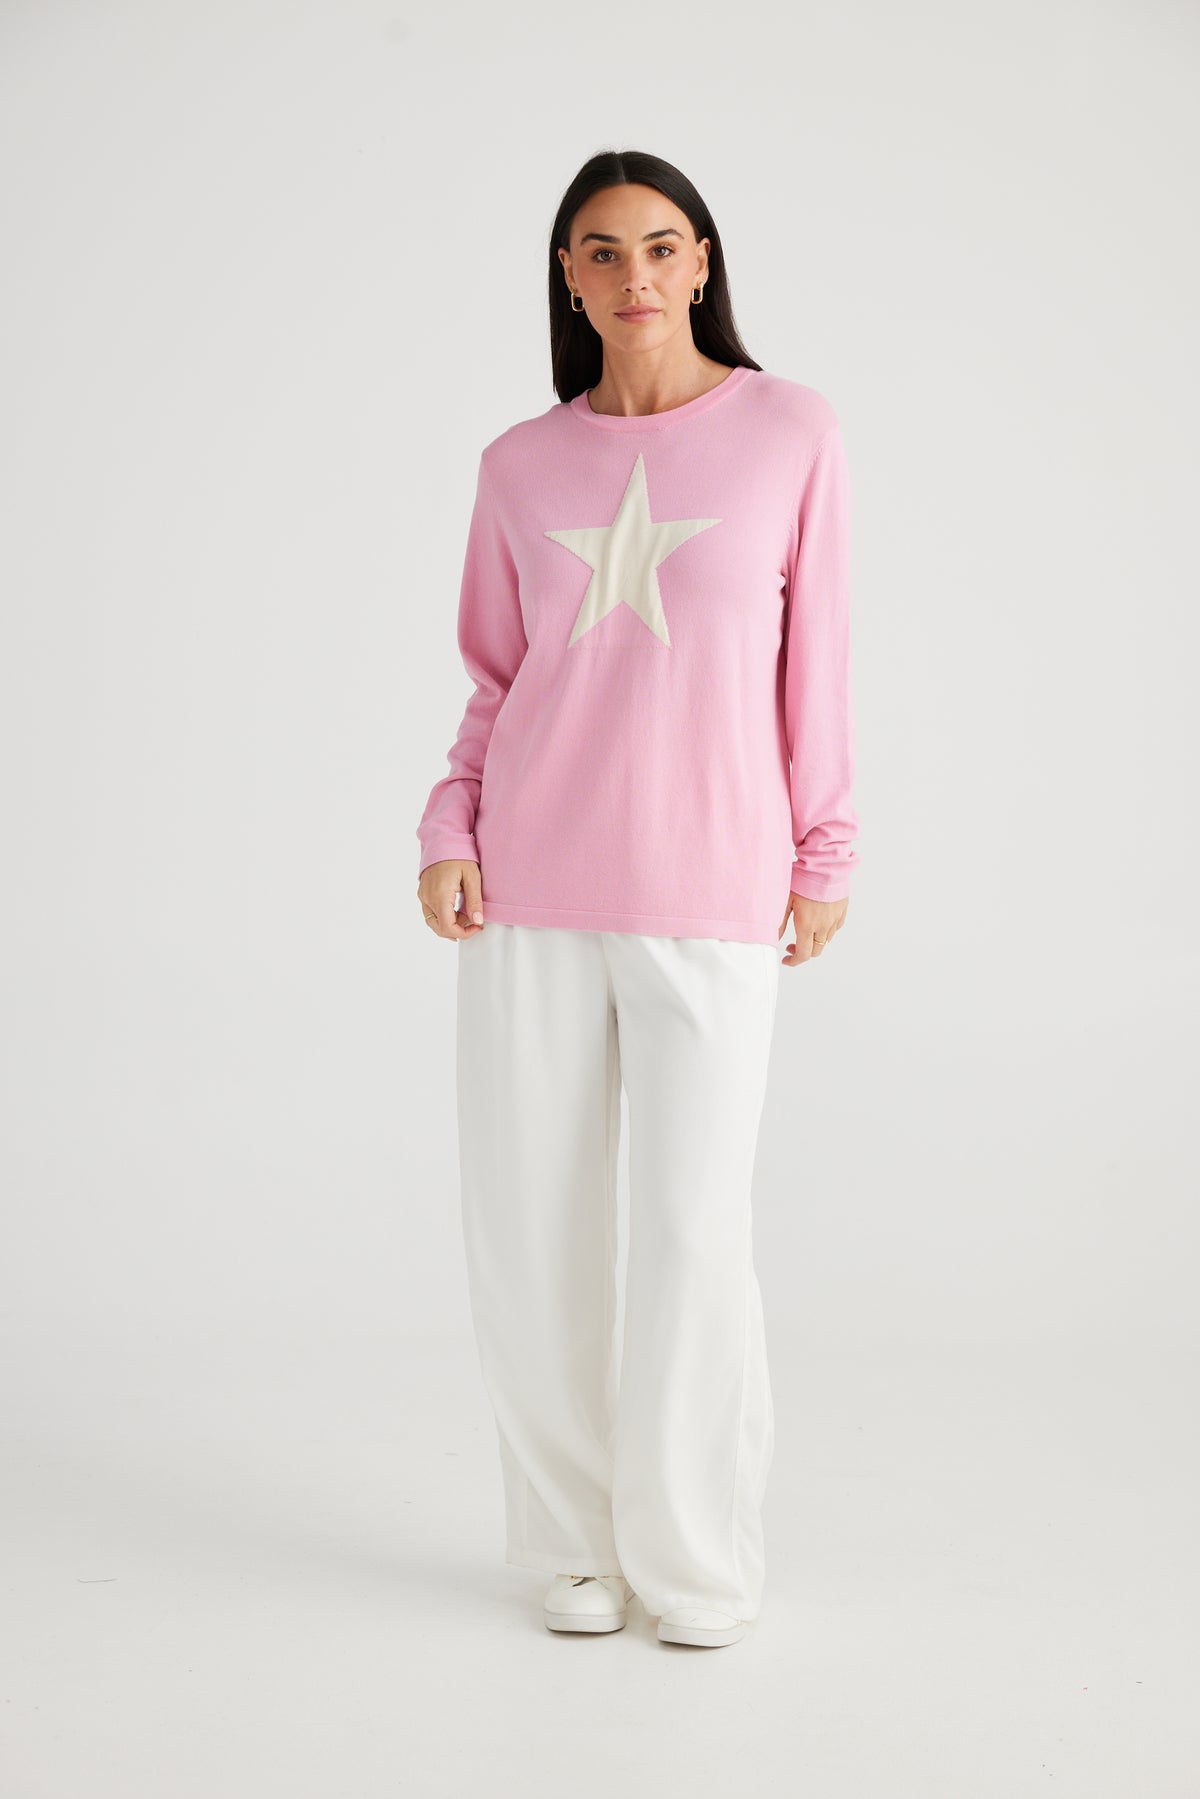 Petra Star Knit Pink